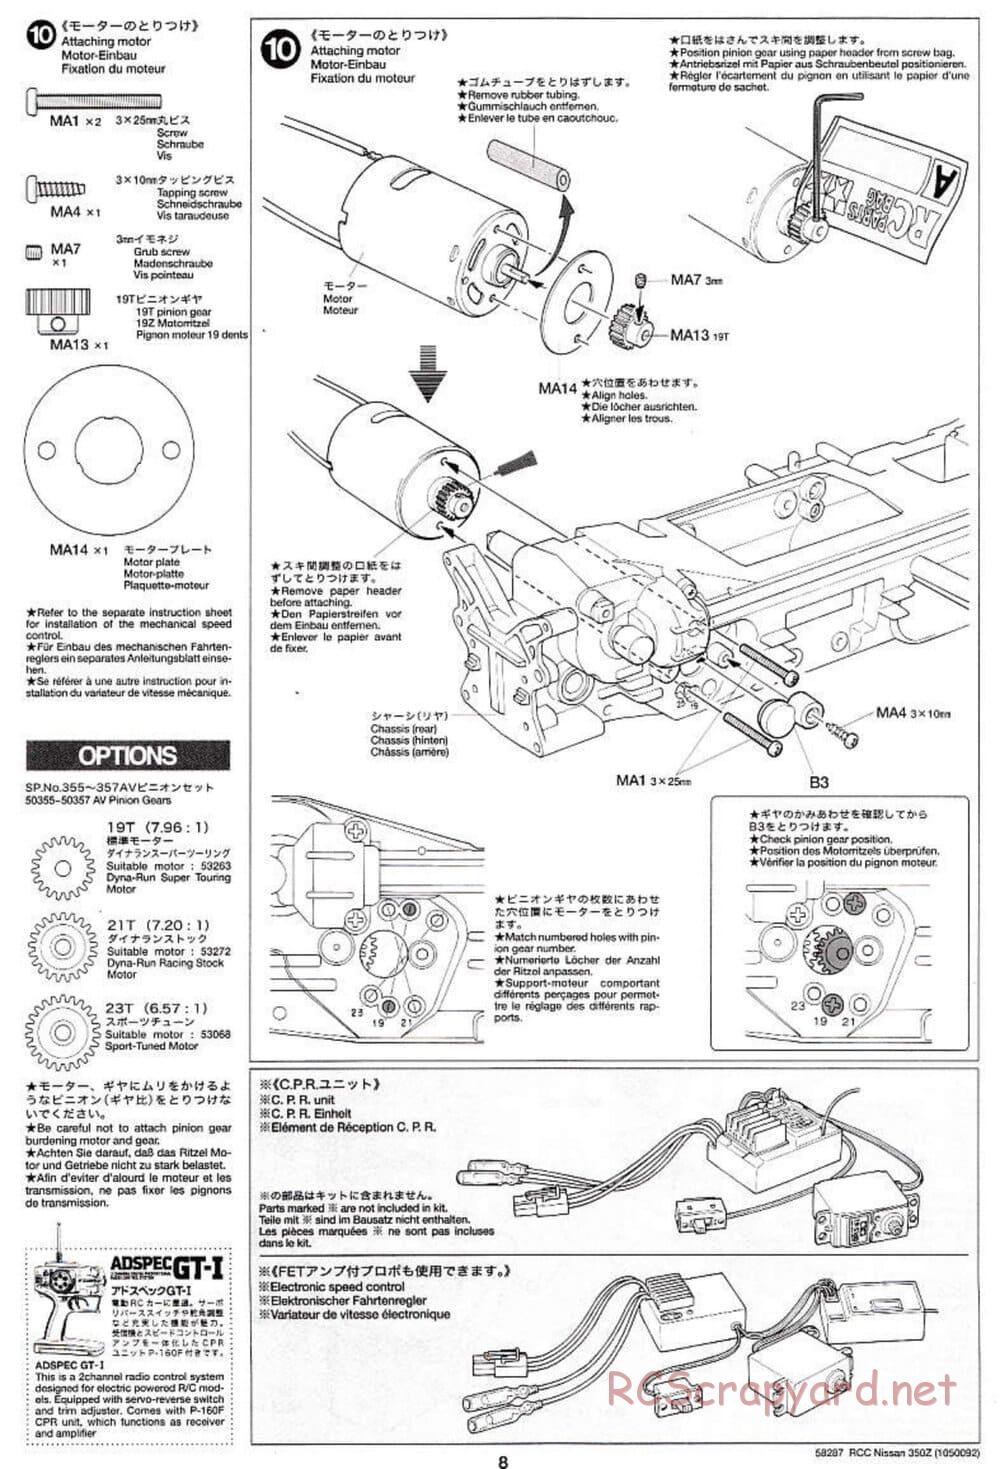 Tamiya - Nissan 350Z - TL-01 Chassis - Manual - Page 8